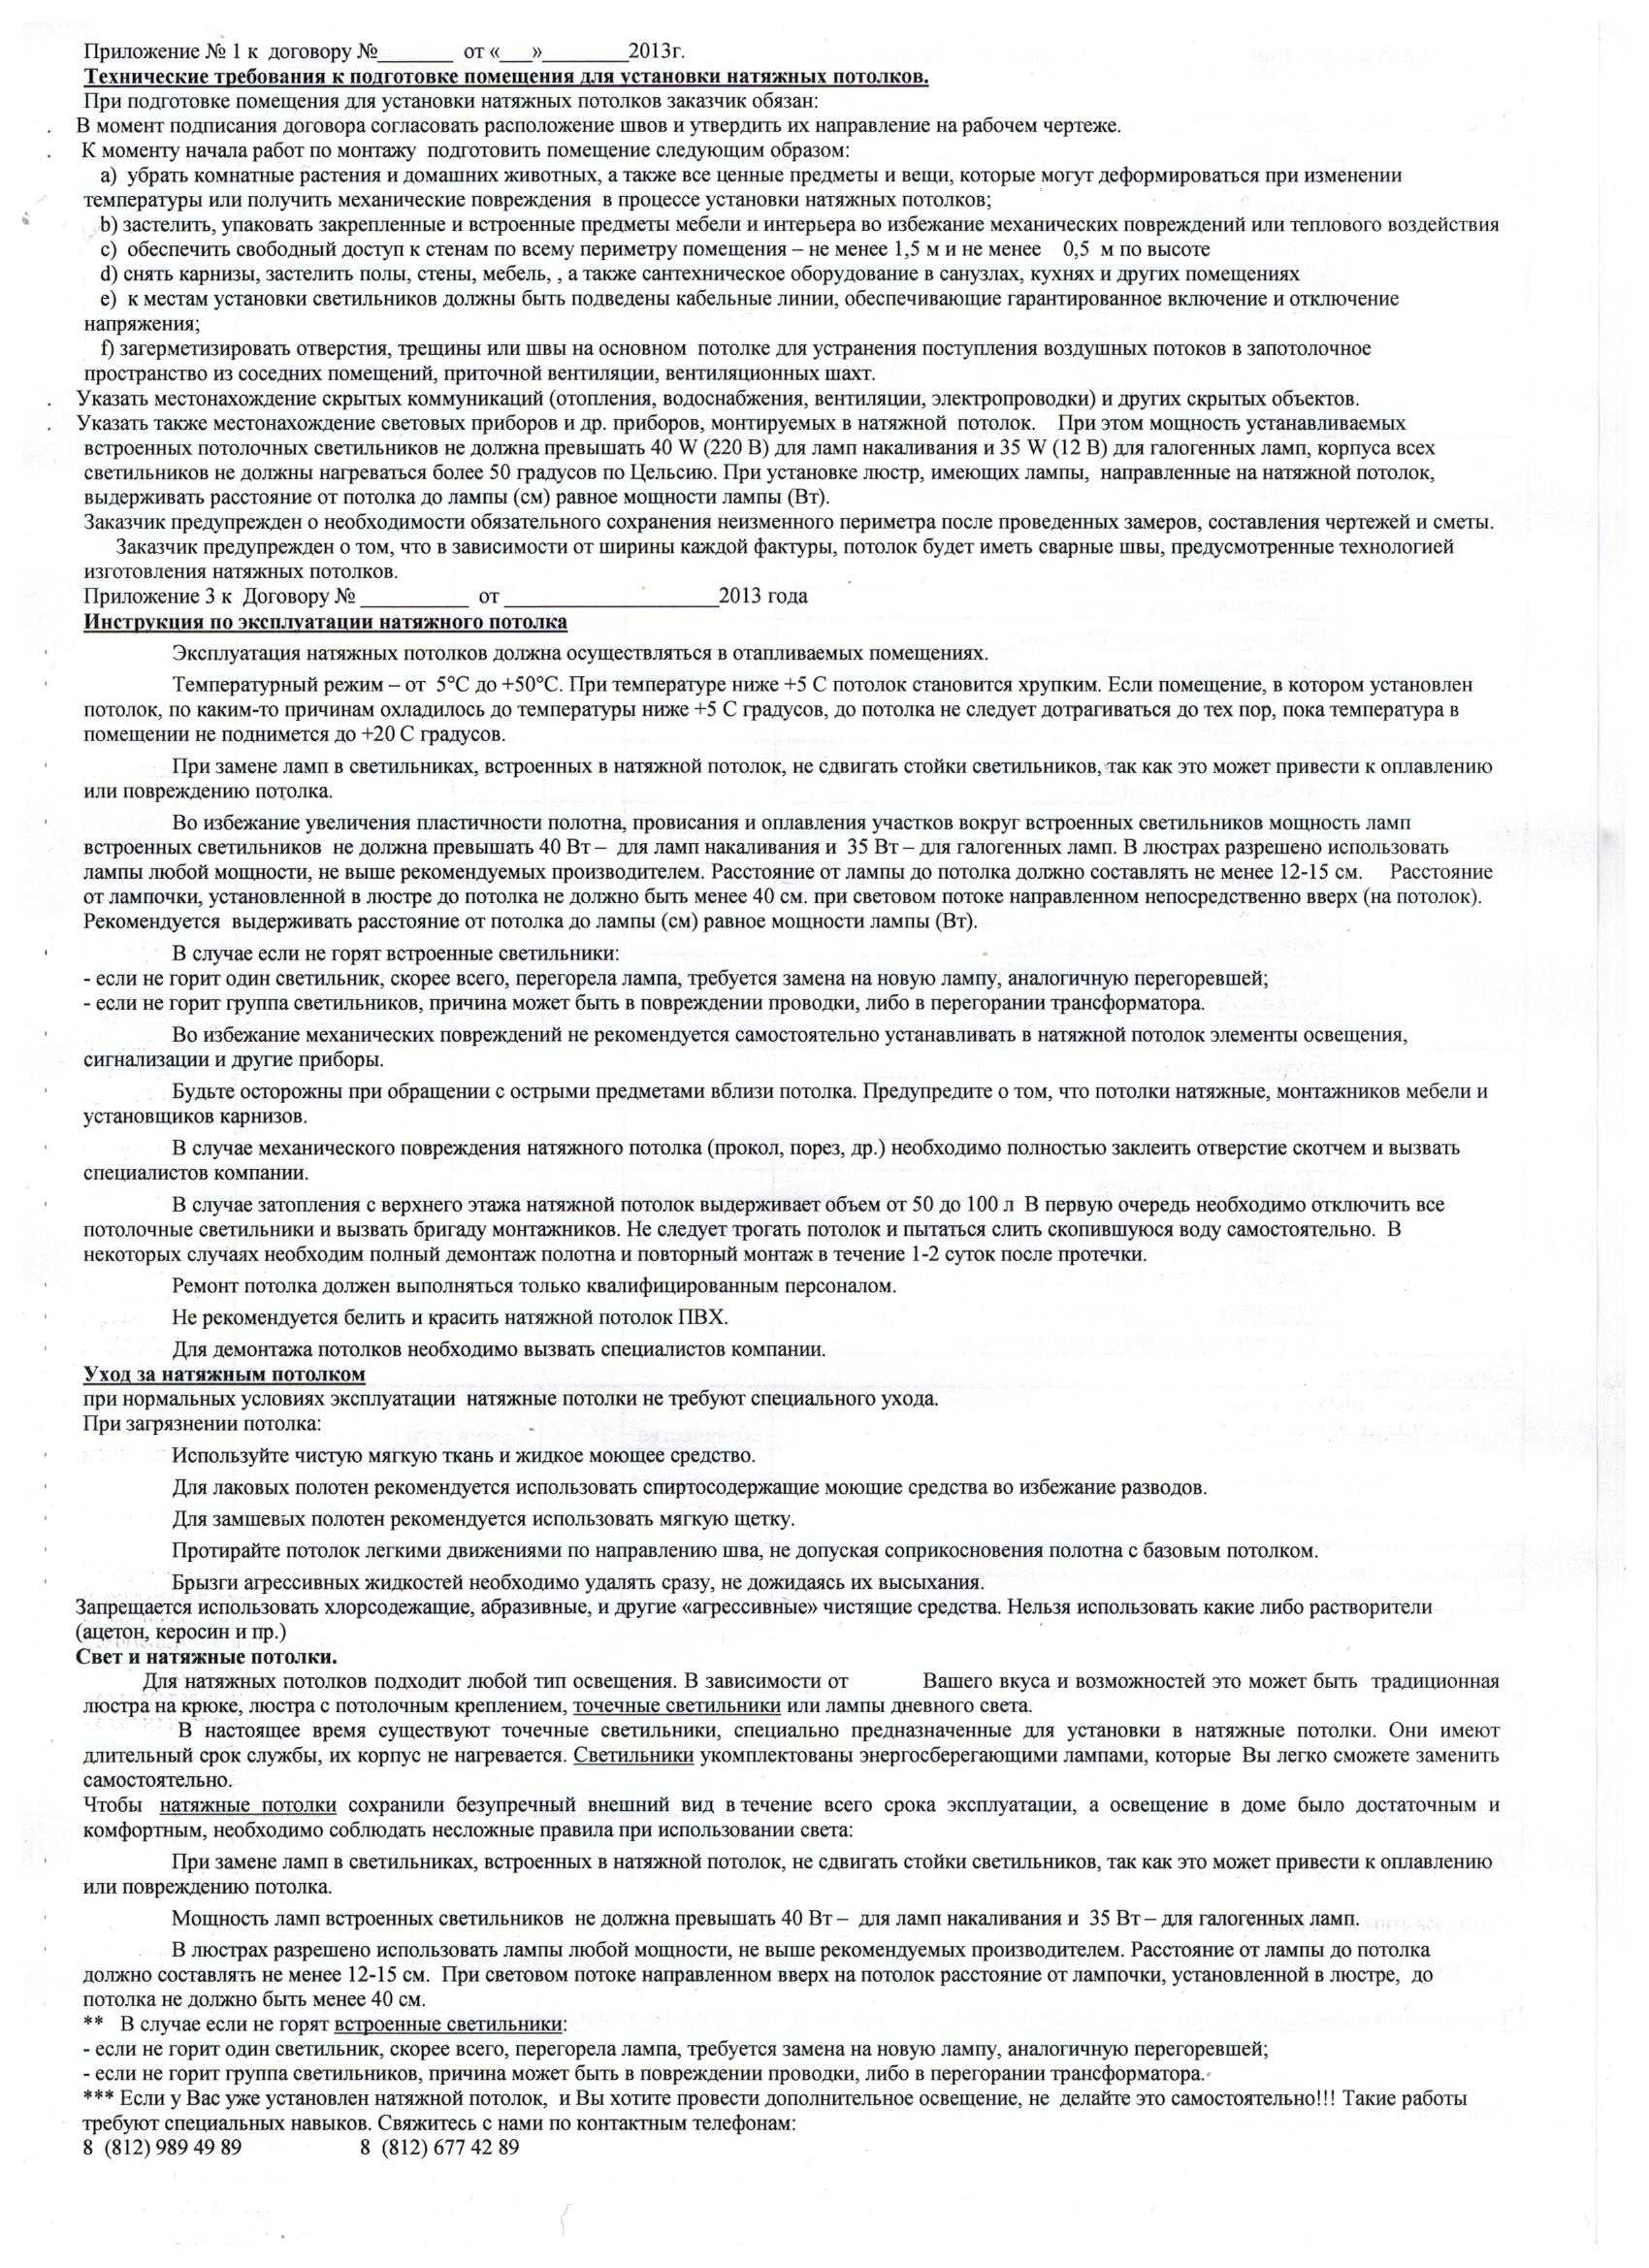 Договор подряда на монтаж натяжных потолков | контент-платформа pandia.ru